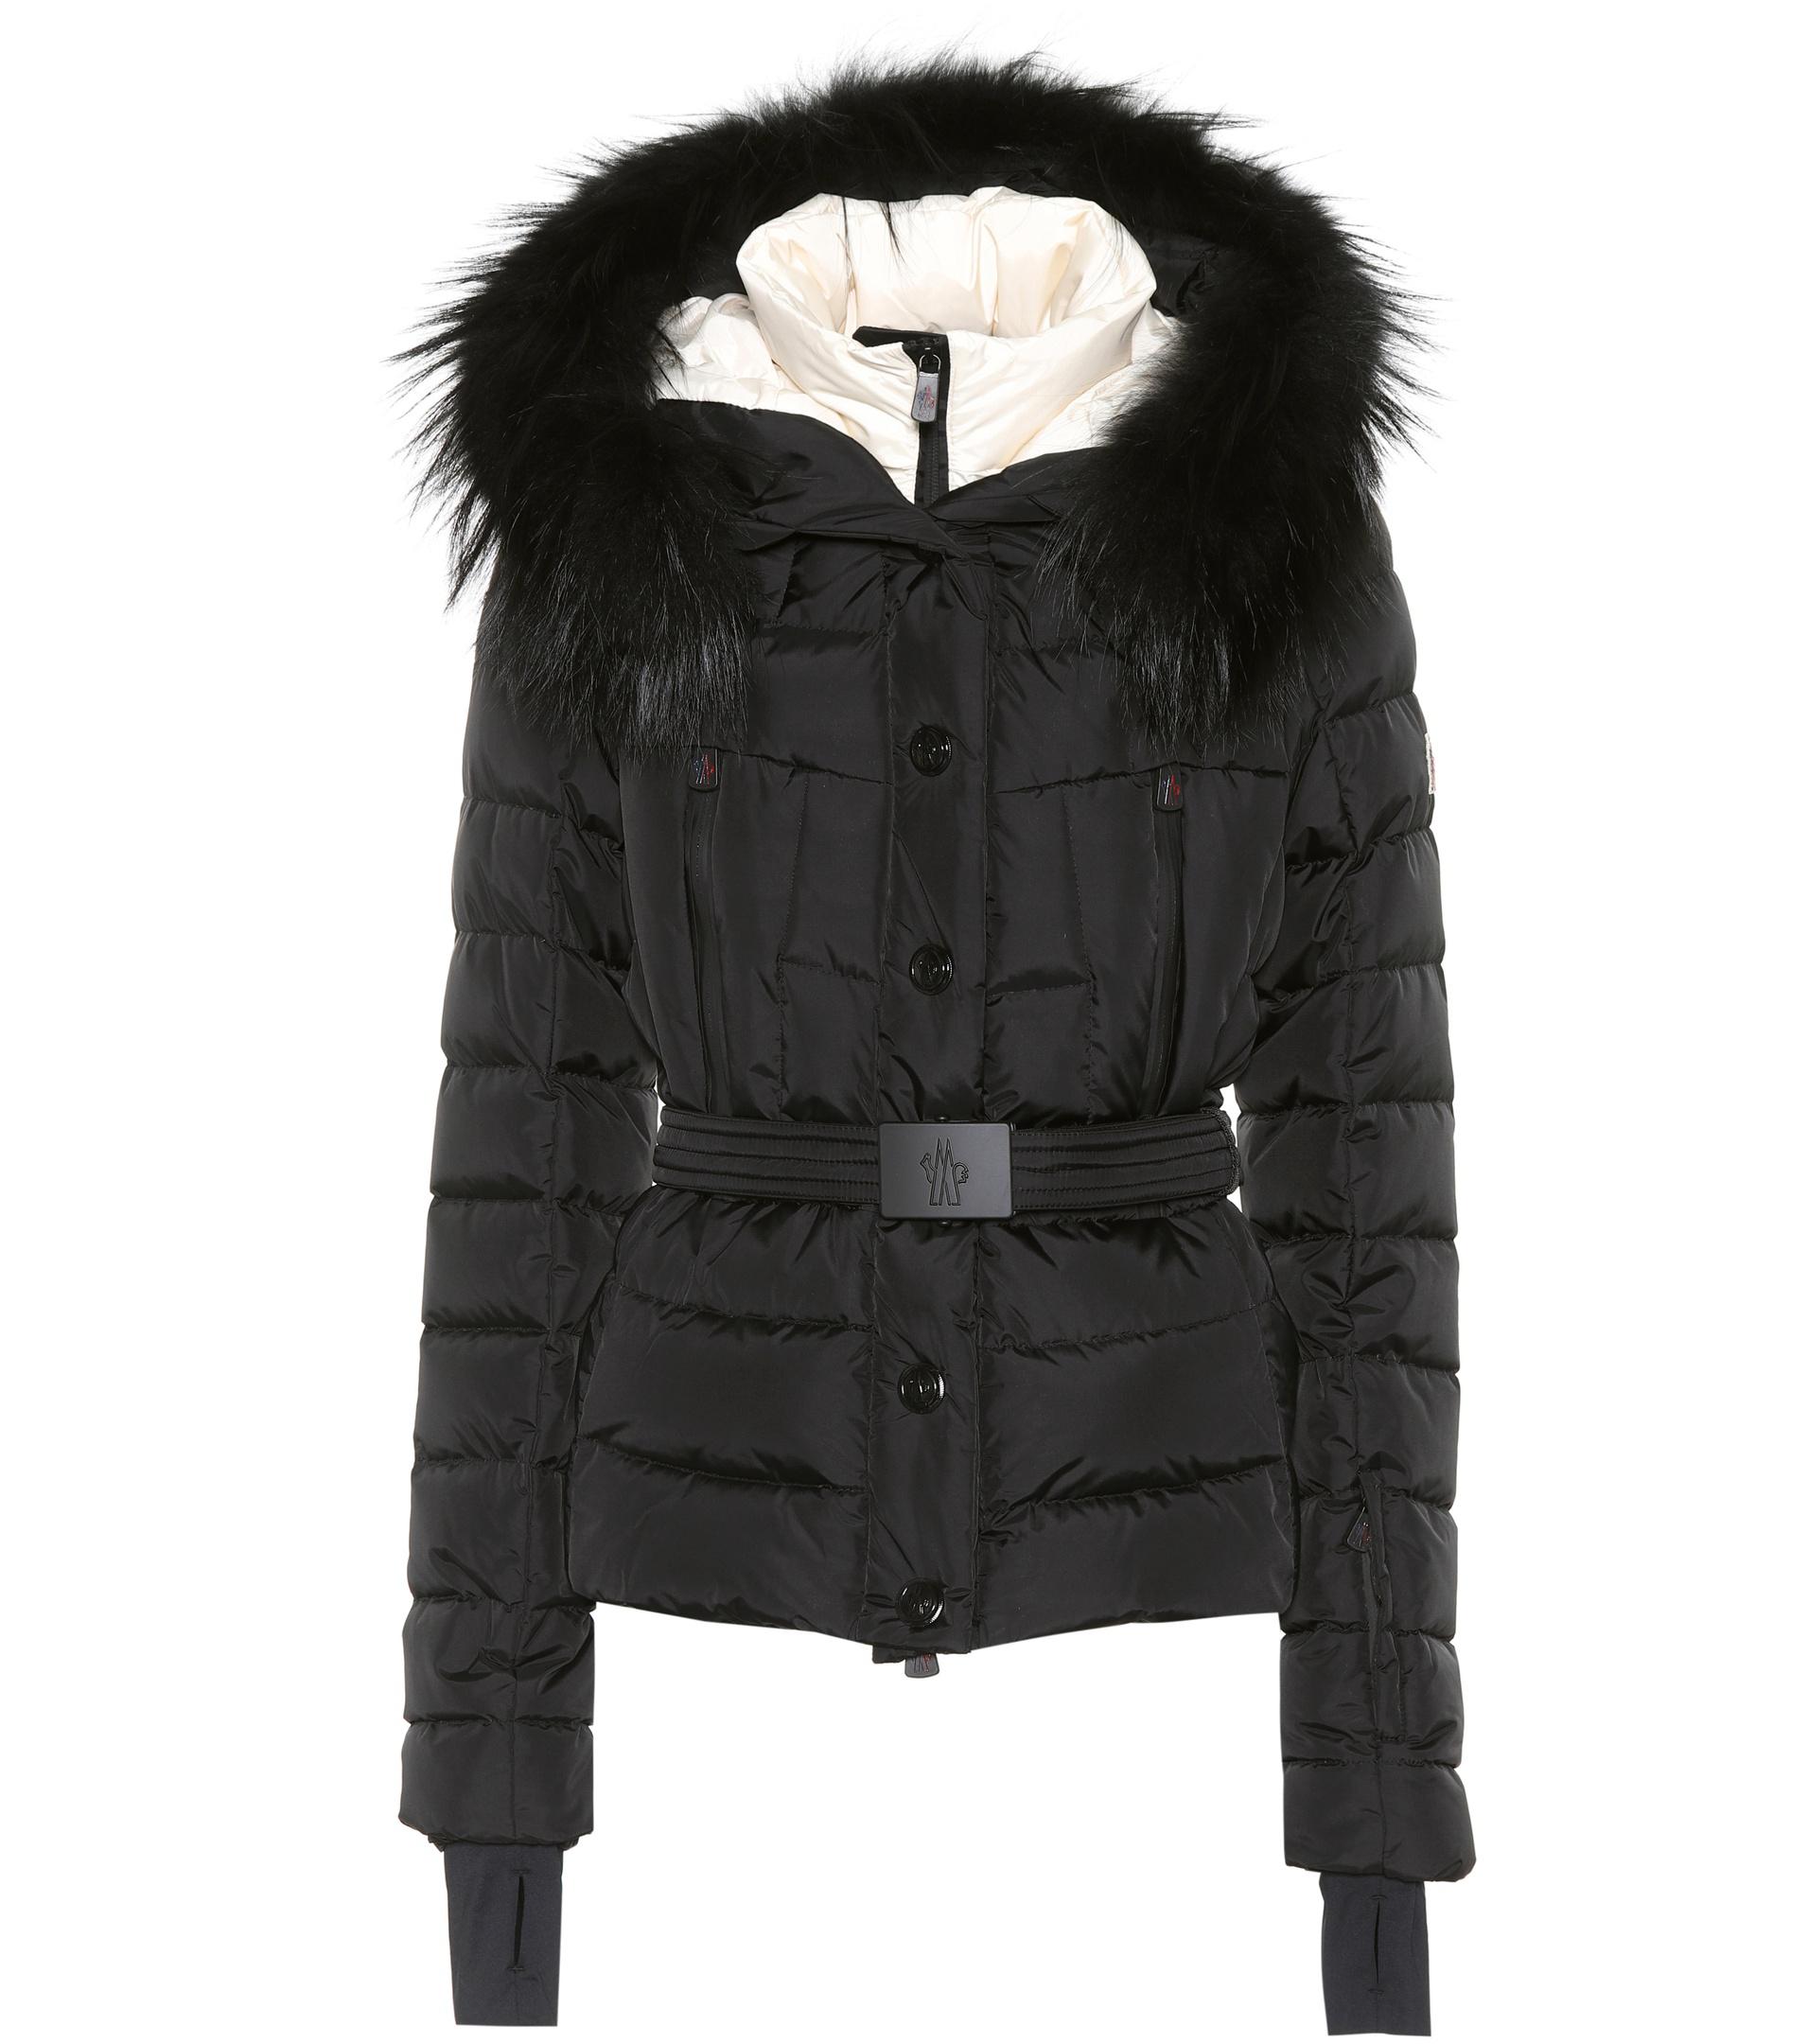 Lyst - Moncler Grenoble Beverley Fur-trimmed Ski Jacket in Black